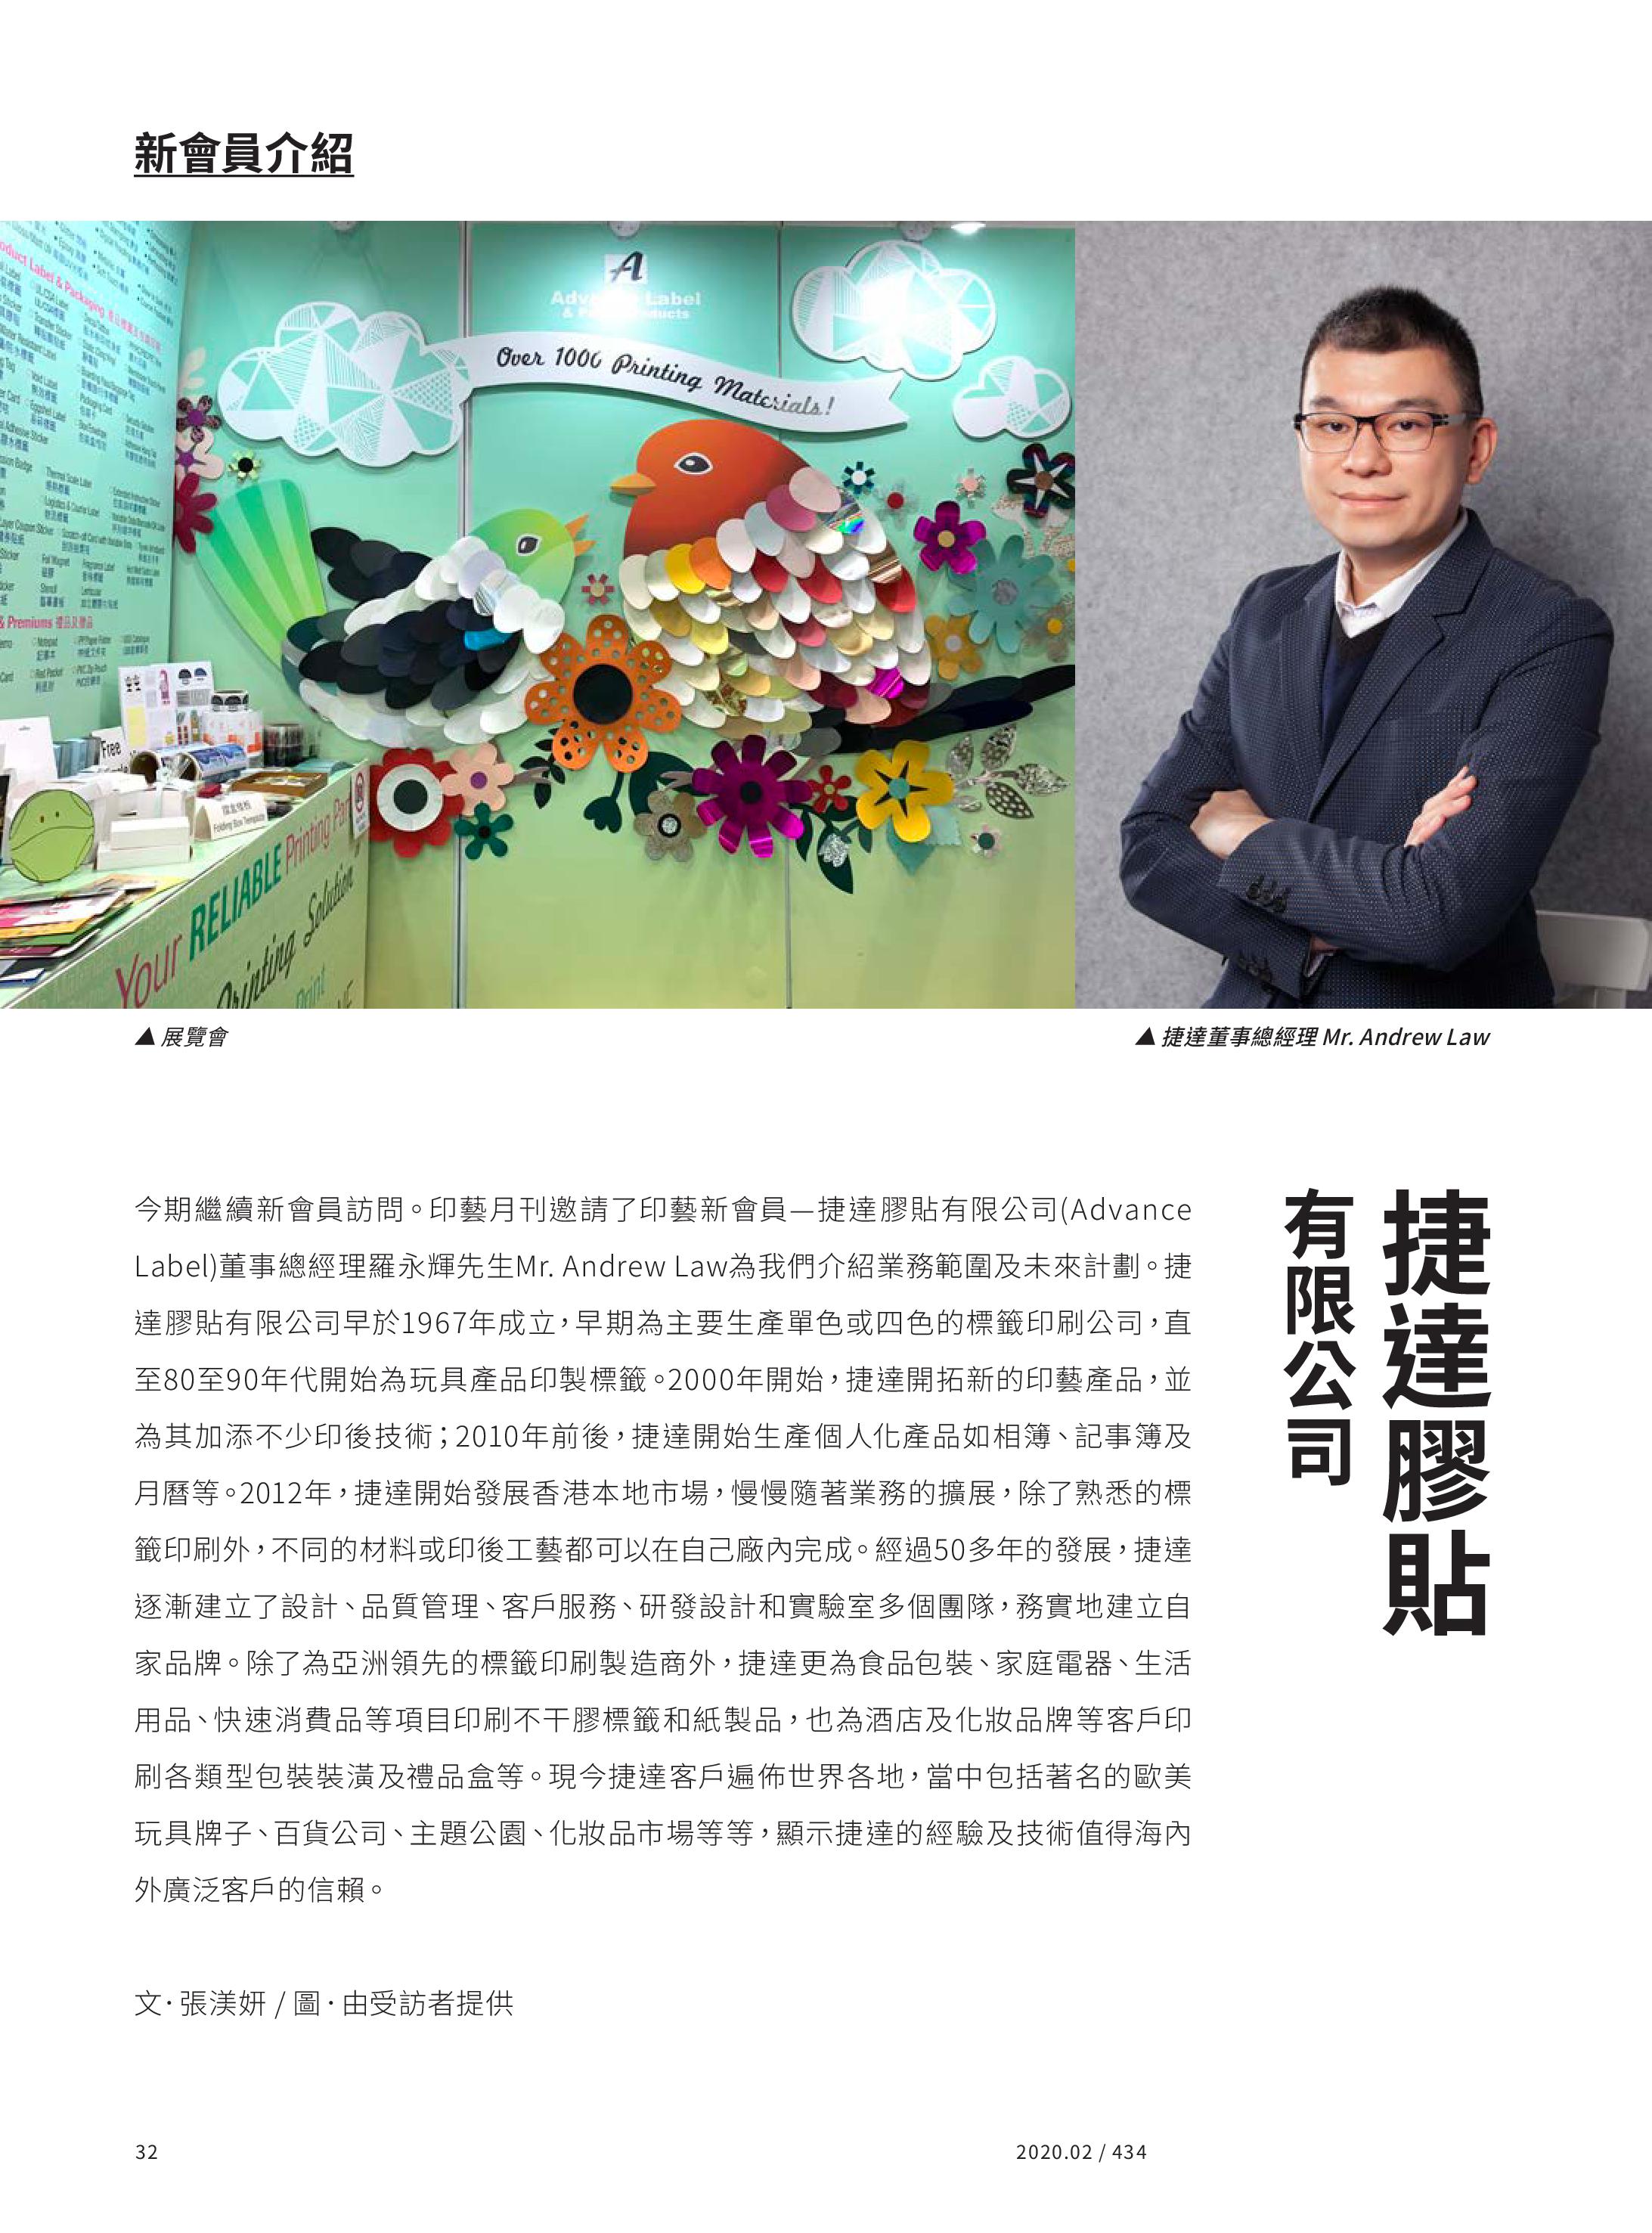 捷達膠貼有限公司正式加入香港印藝學會